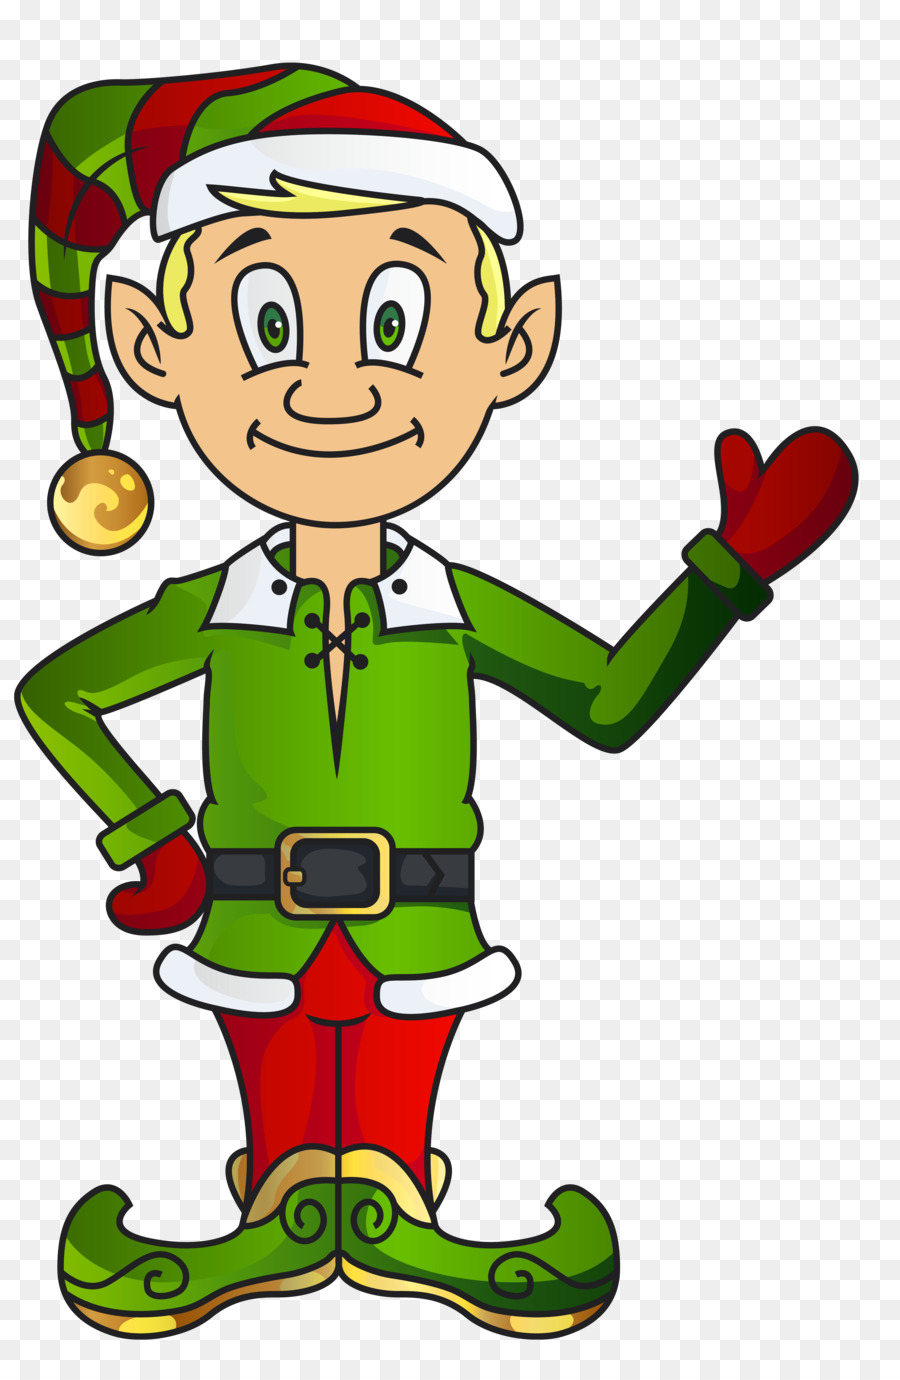 Christmas elf Santa Claus Clip art - Summer Elf Cliparts png download - 4257*6437 - Free Transparent Elf png Download.